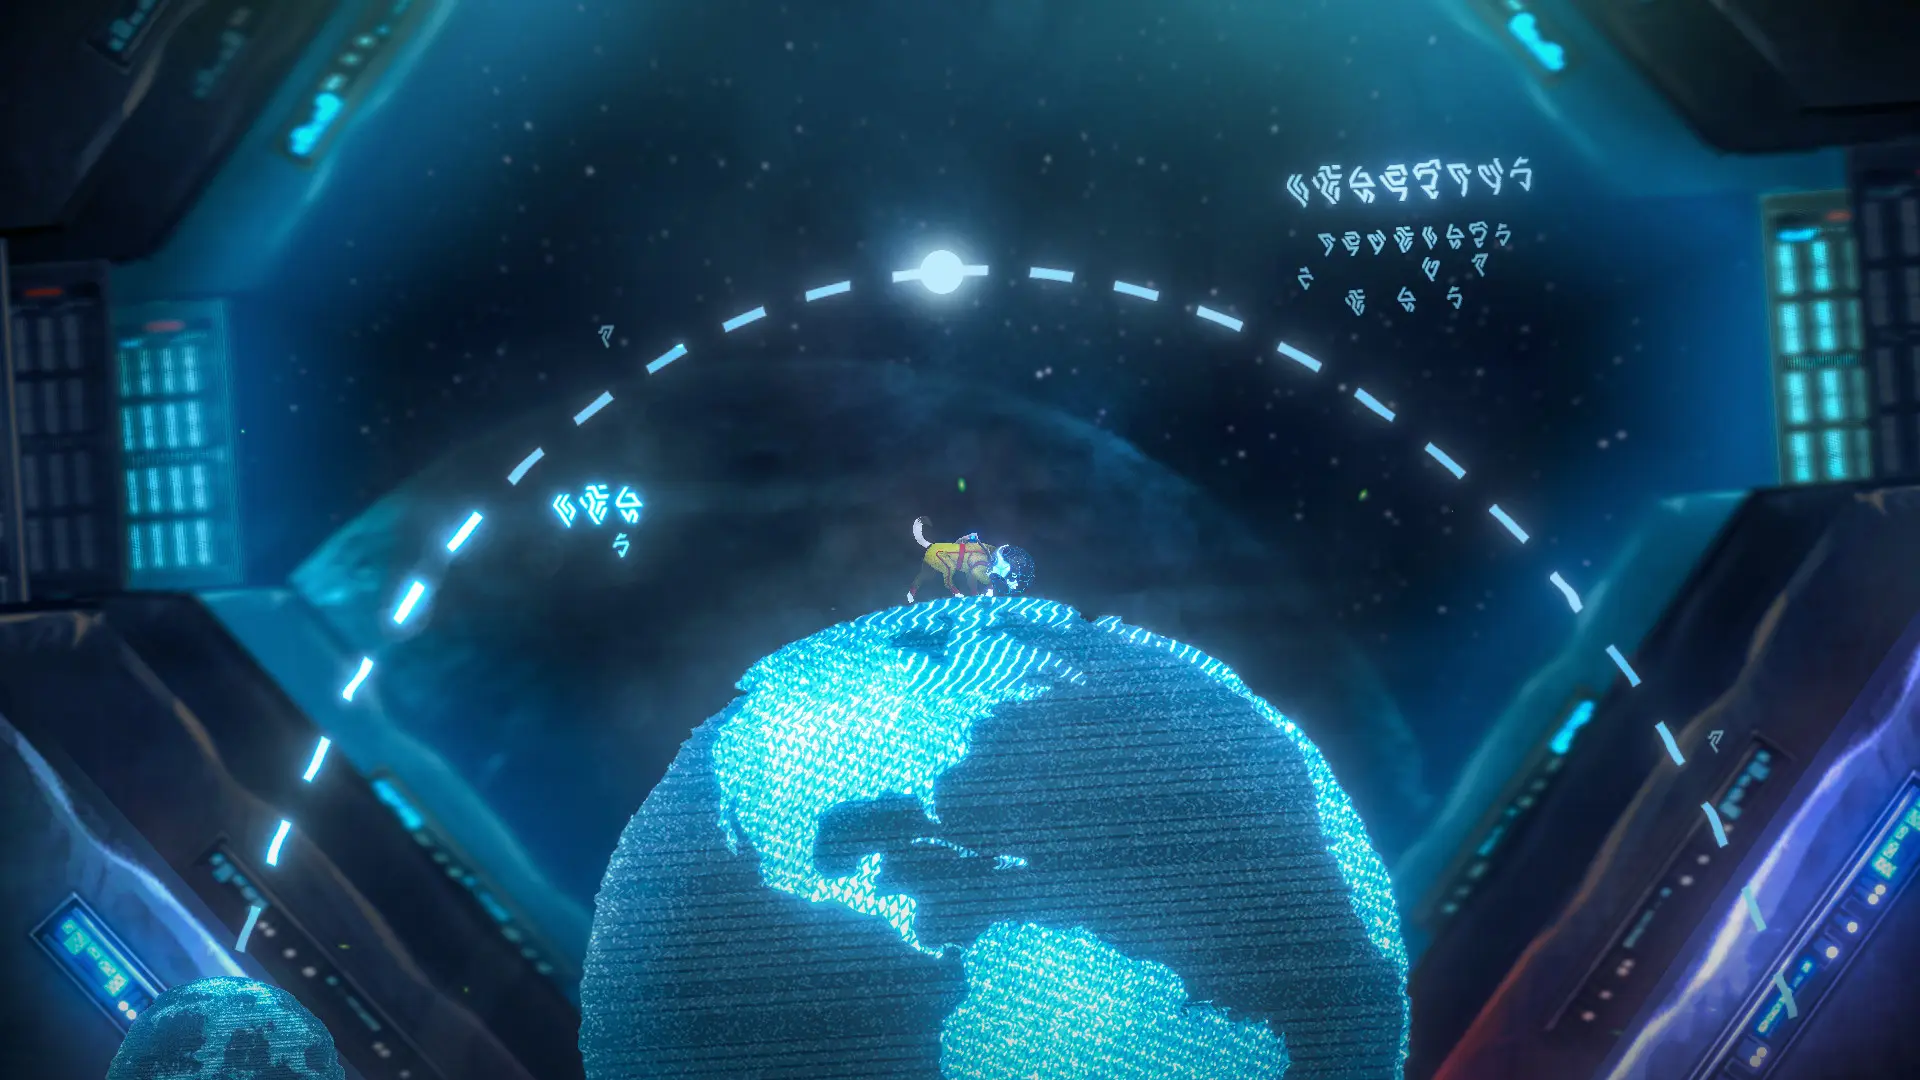 دانلود بازی Space Tail: Every Journey Leads Home برای کامپیوتر PC